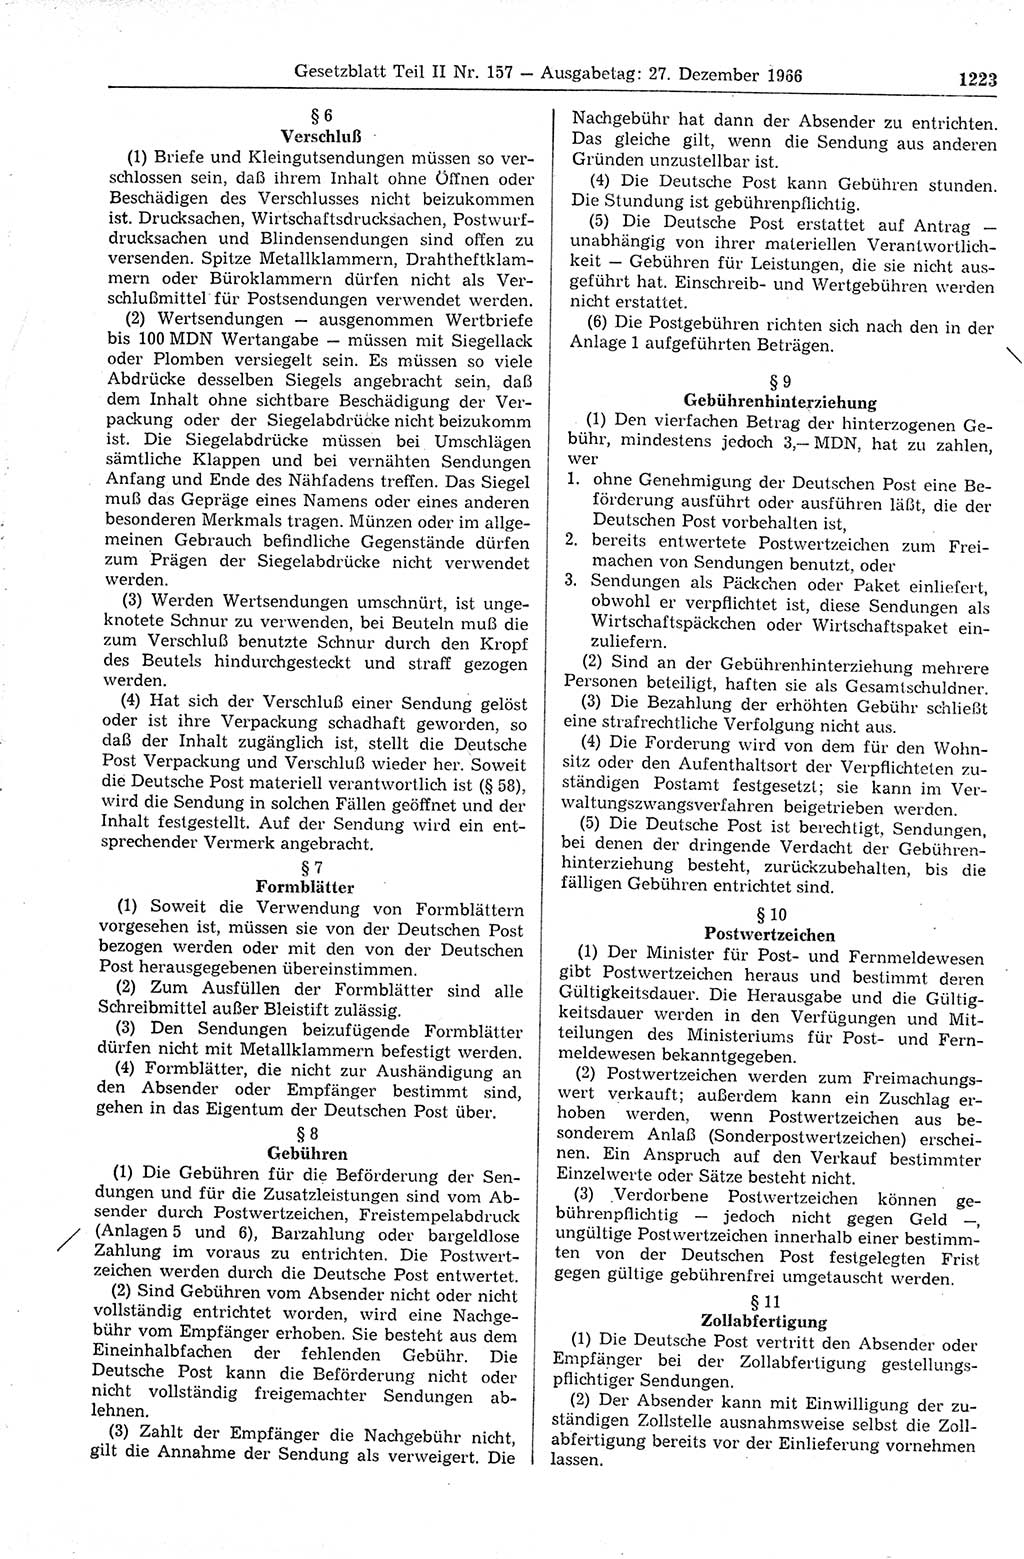 Gesetzblatt (GBl.) der Deutschen Demokratischen Republik (DDR) Teil ⅠⅠ 1966, Seite 1223 (GBl. DDR ⅠⅠ 1966, S. 1223)